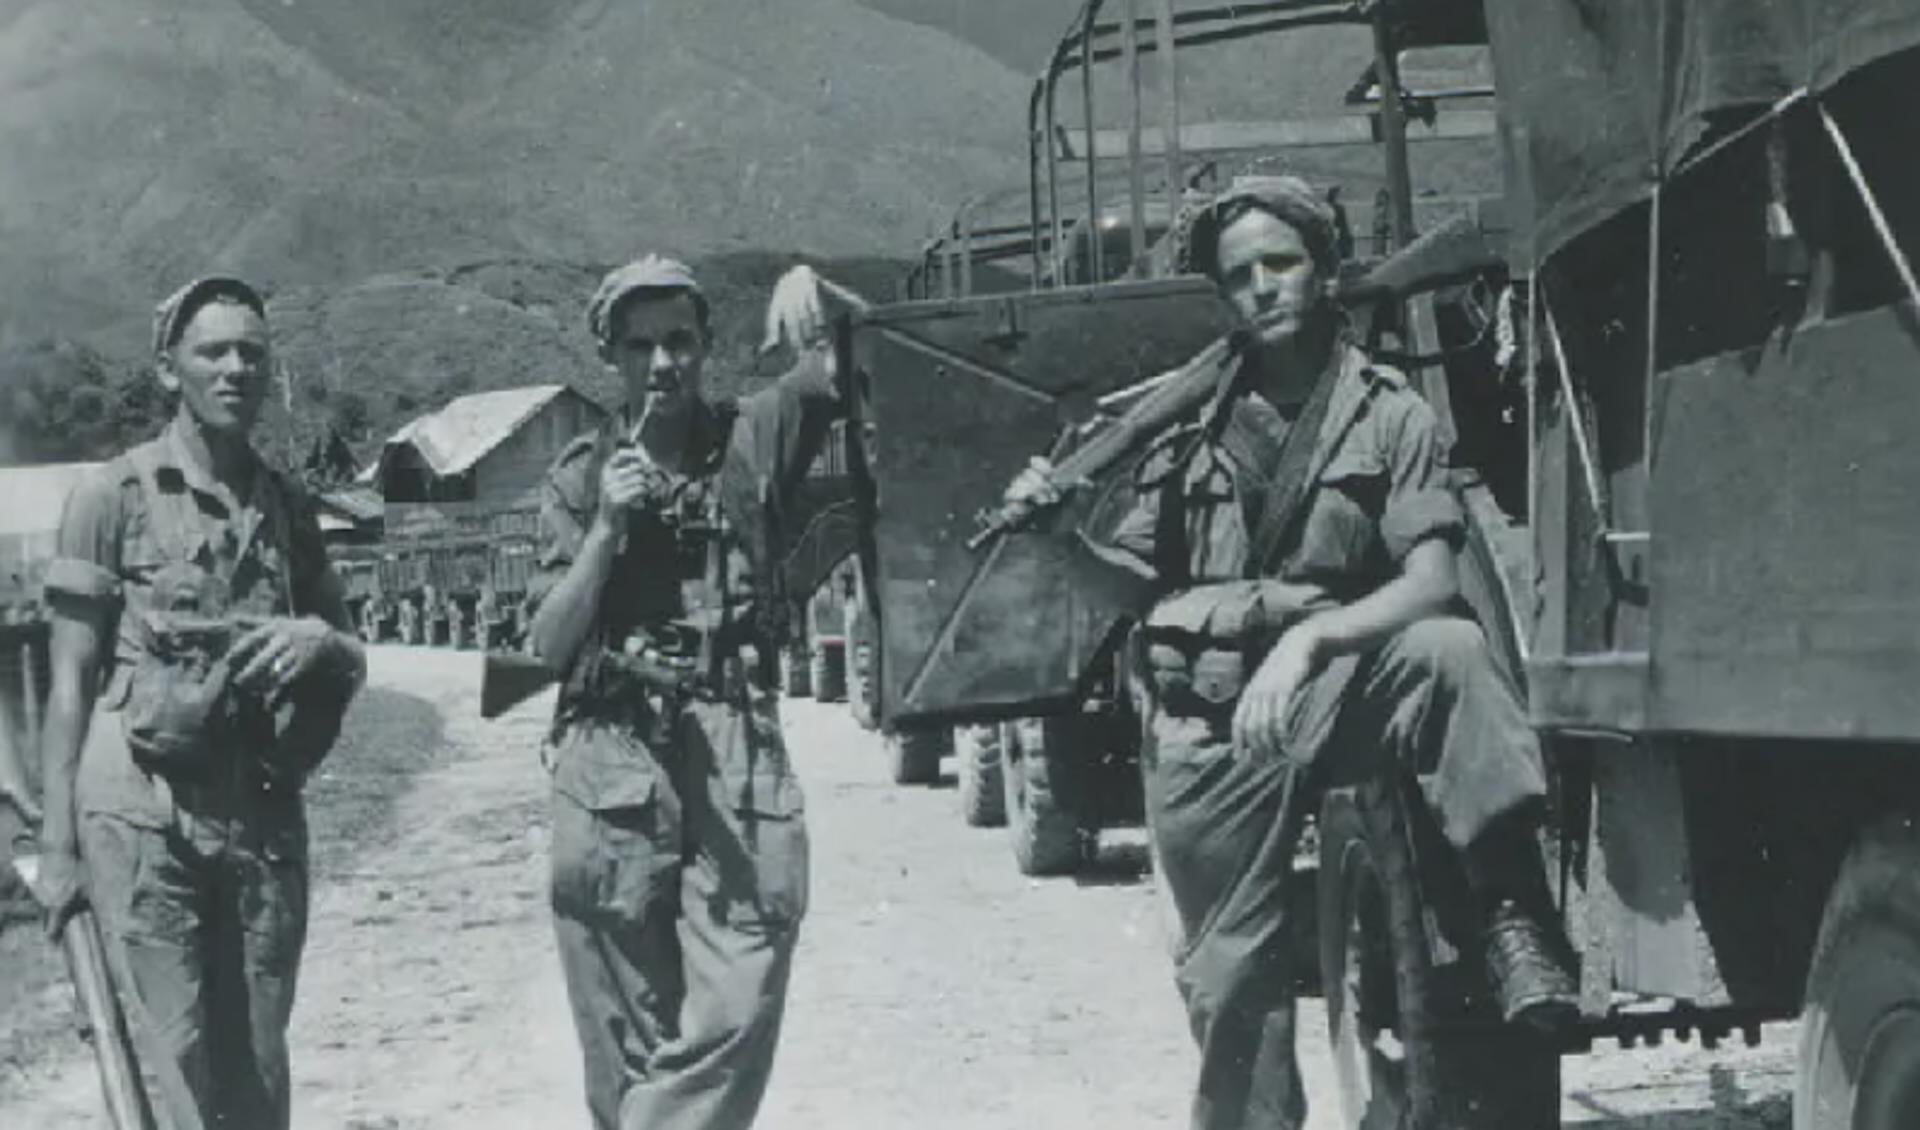 Indiëgangers tijdens de tweede politionele actie in Noord-Sumatra, 1948. Links staat Moordrechtenaar Cees van Gameren. Hij leeft nog en opende eerder dit jaar de tentoonstelling.